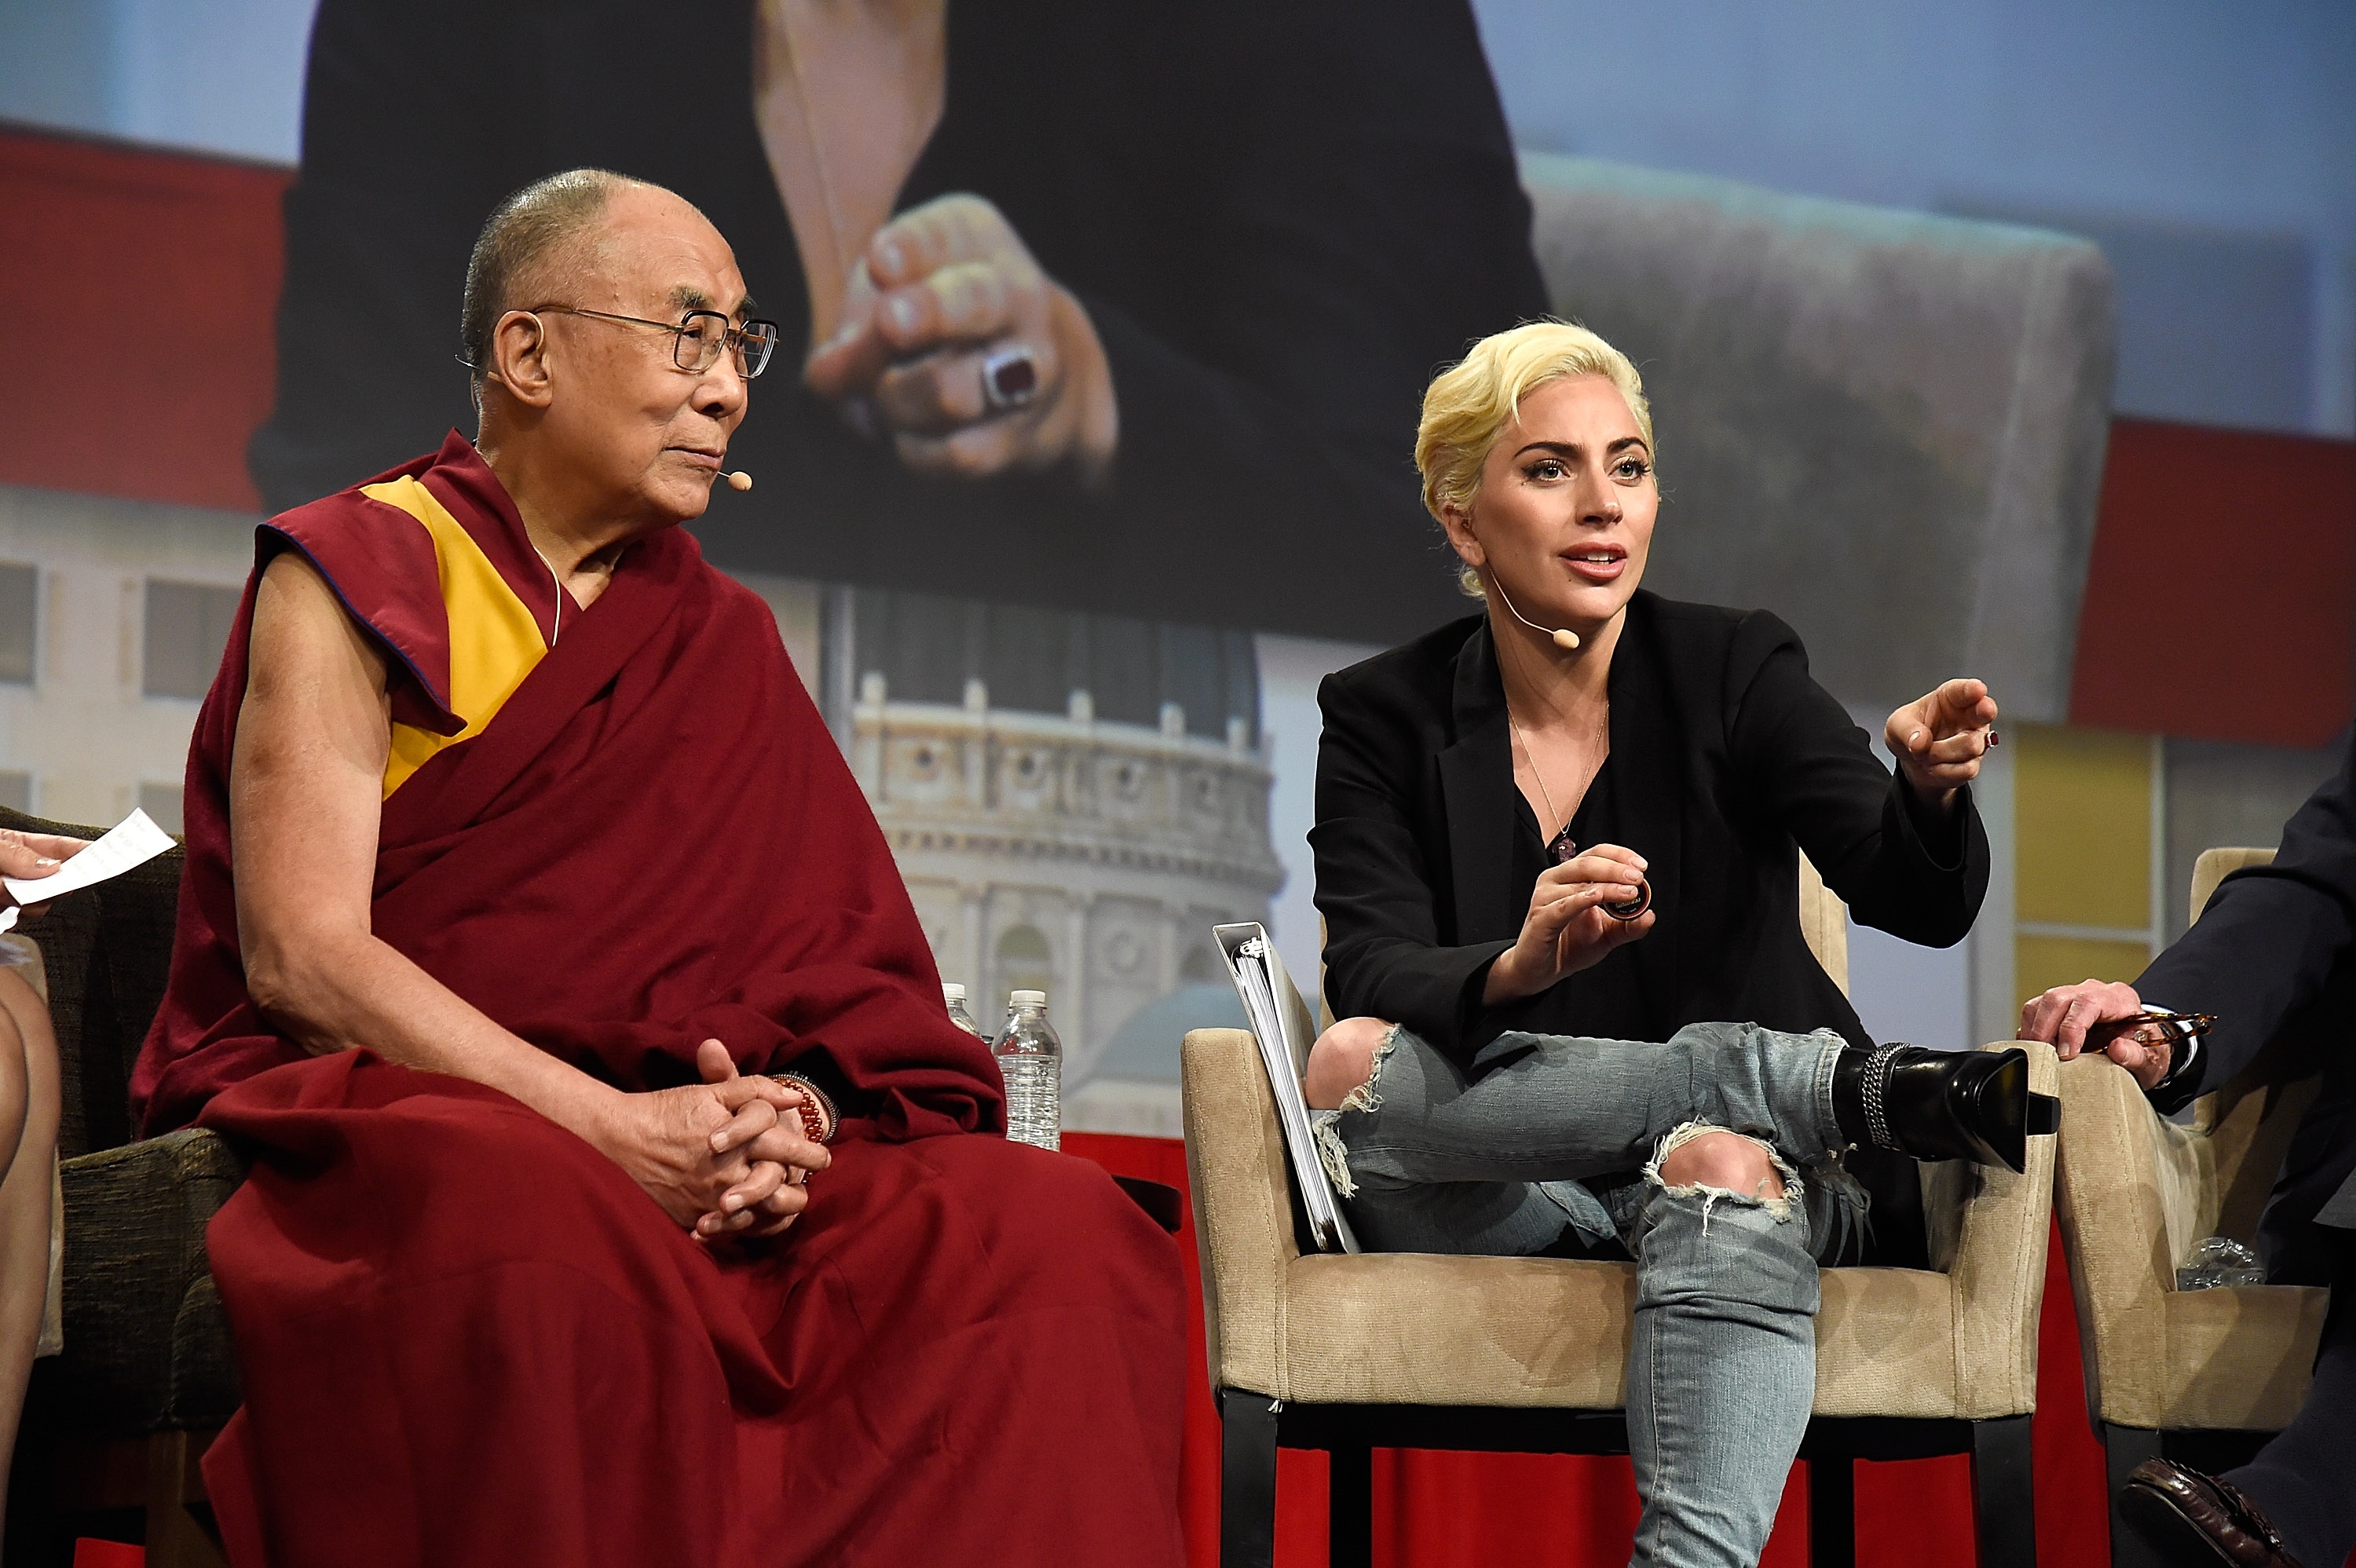 His Holiness the Dalai Lama with Lady Gaga